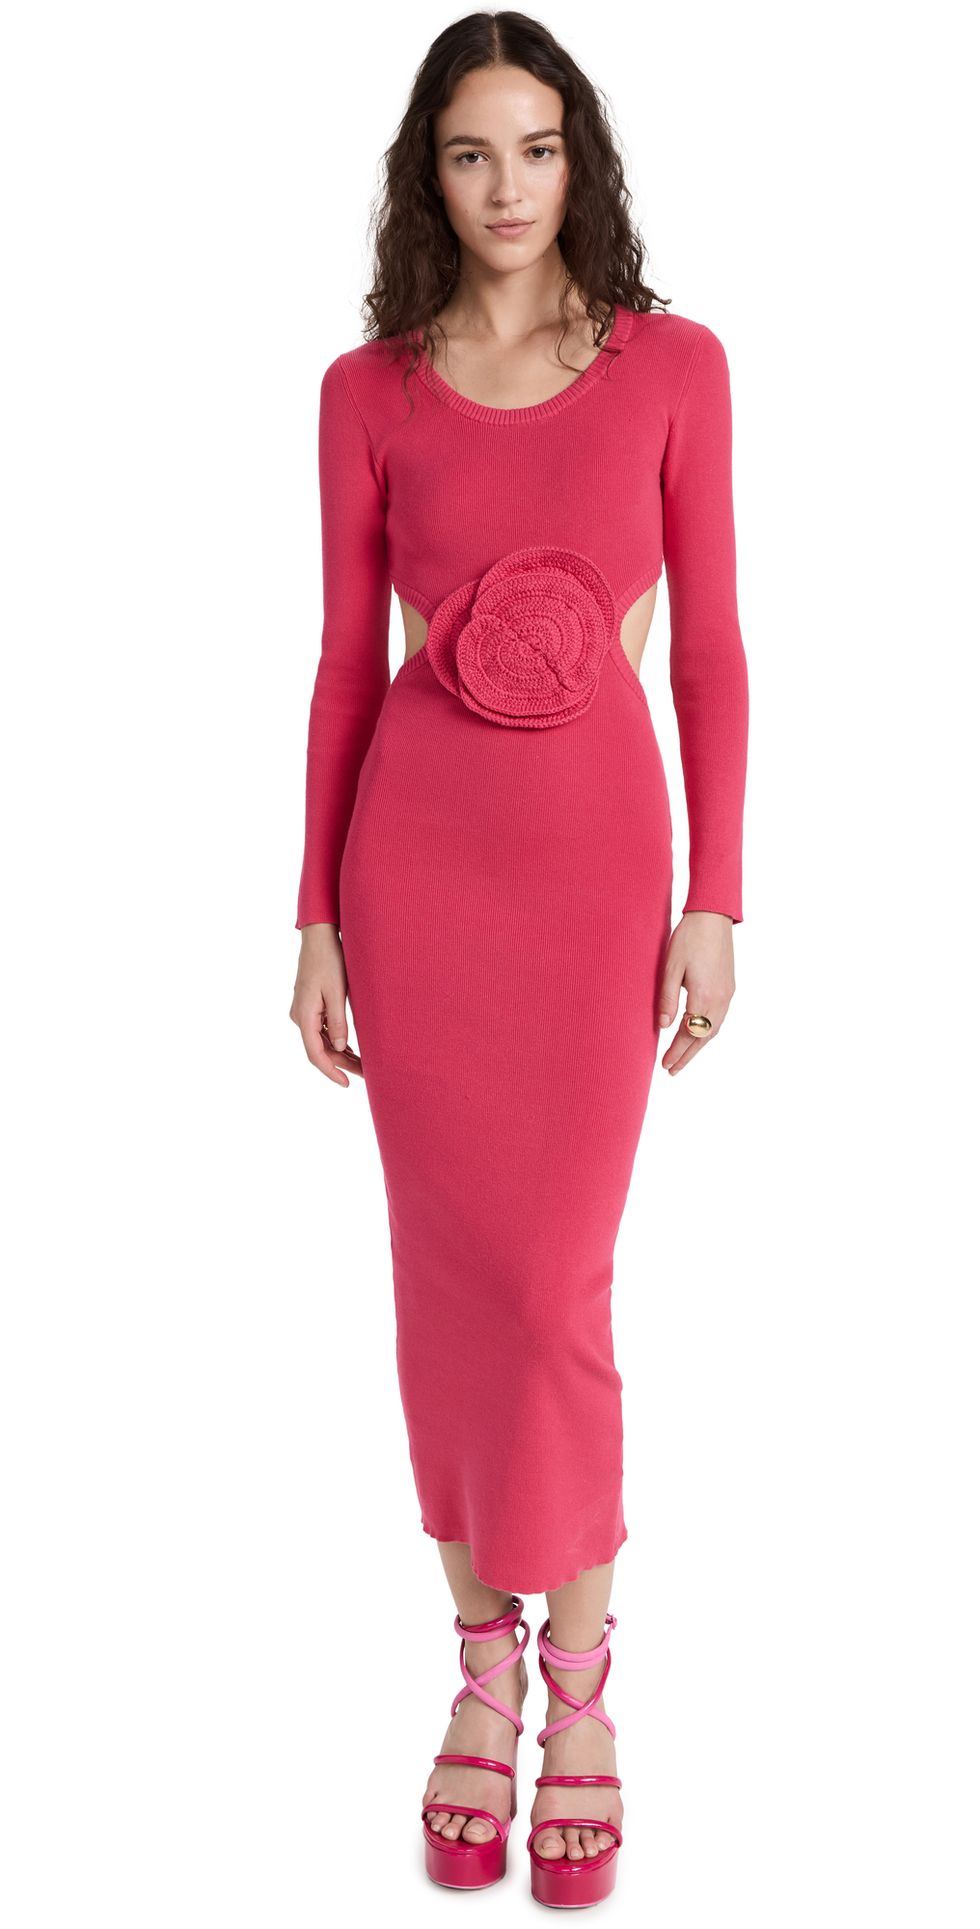 Rose Crochet Dress